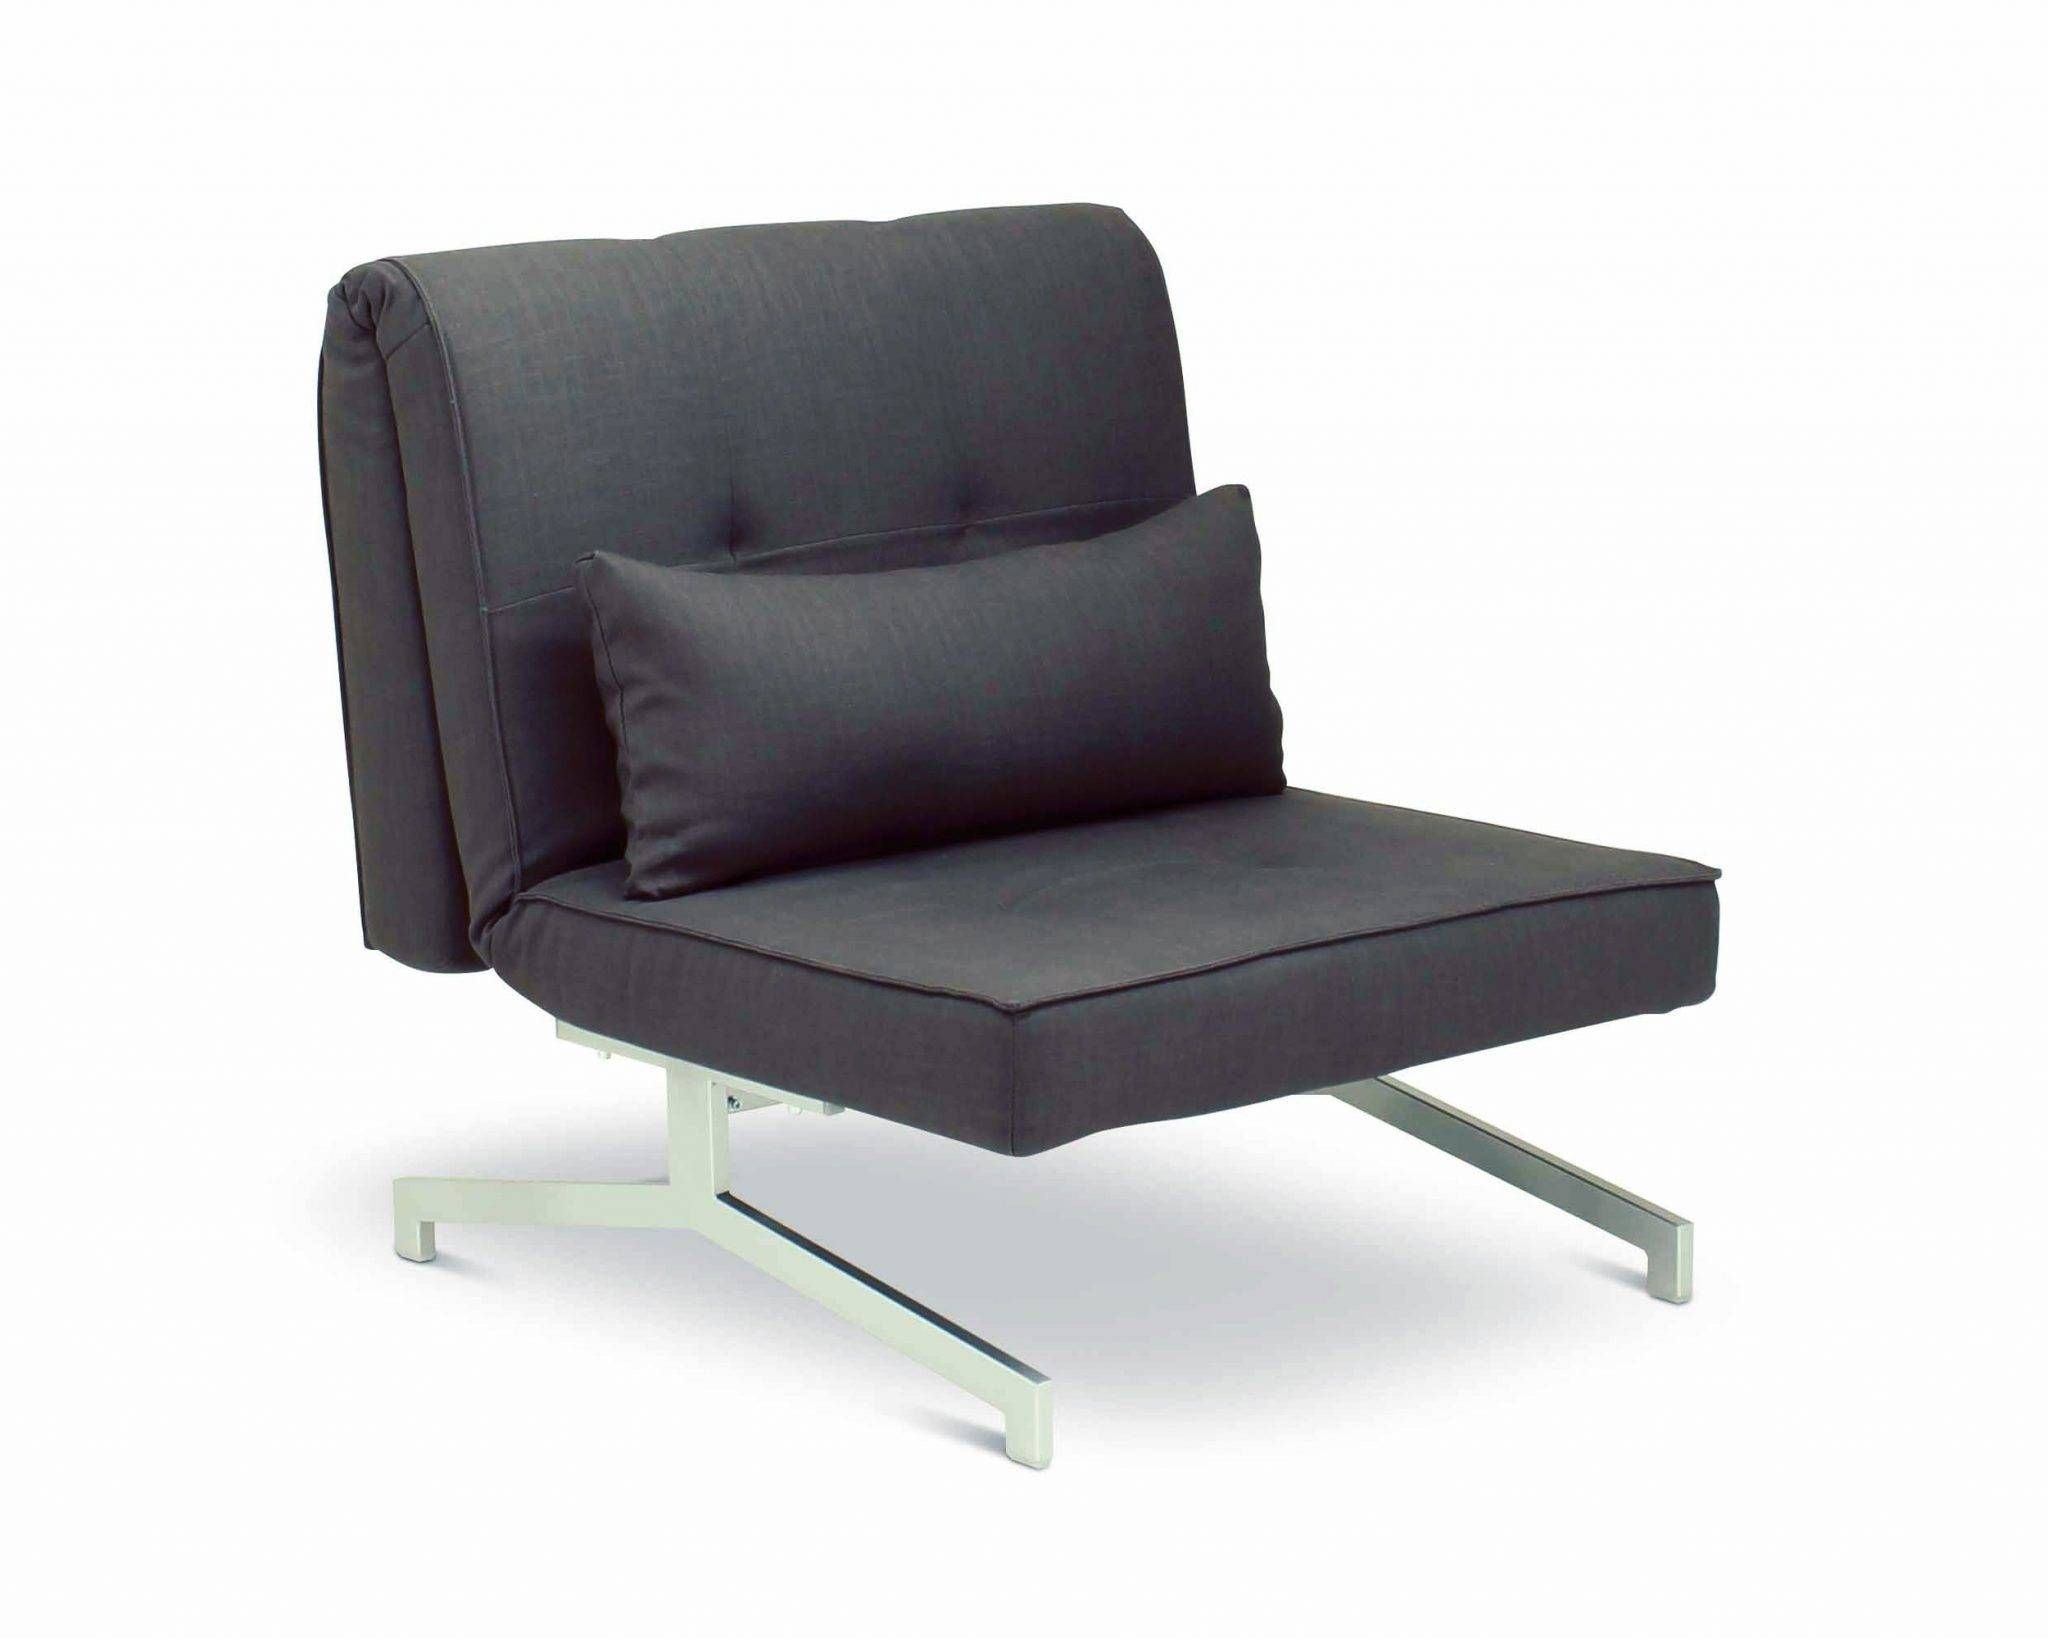 ▻ Sofa Bed : Delightful Single Sofa Bed Ikea Ikea Single Cool Intended For Ikea Single Sofa Beds (View 13 of 30)